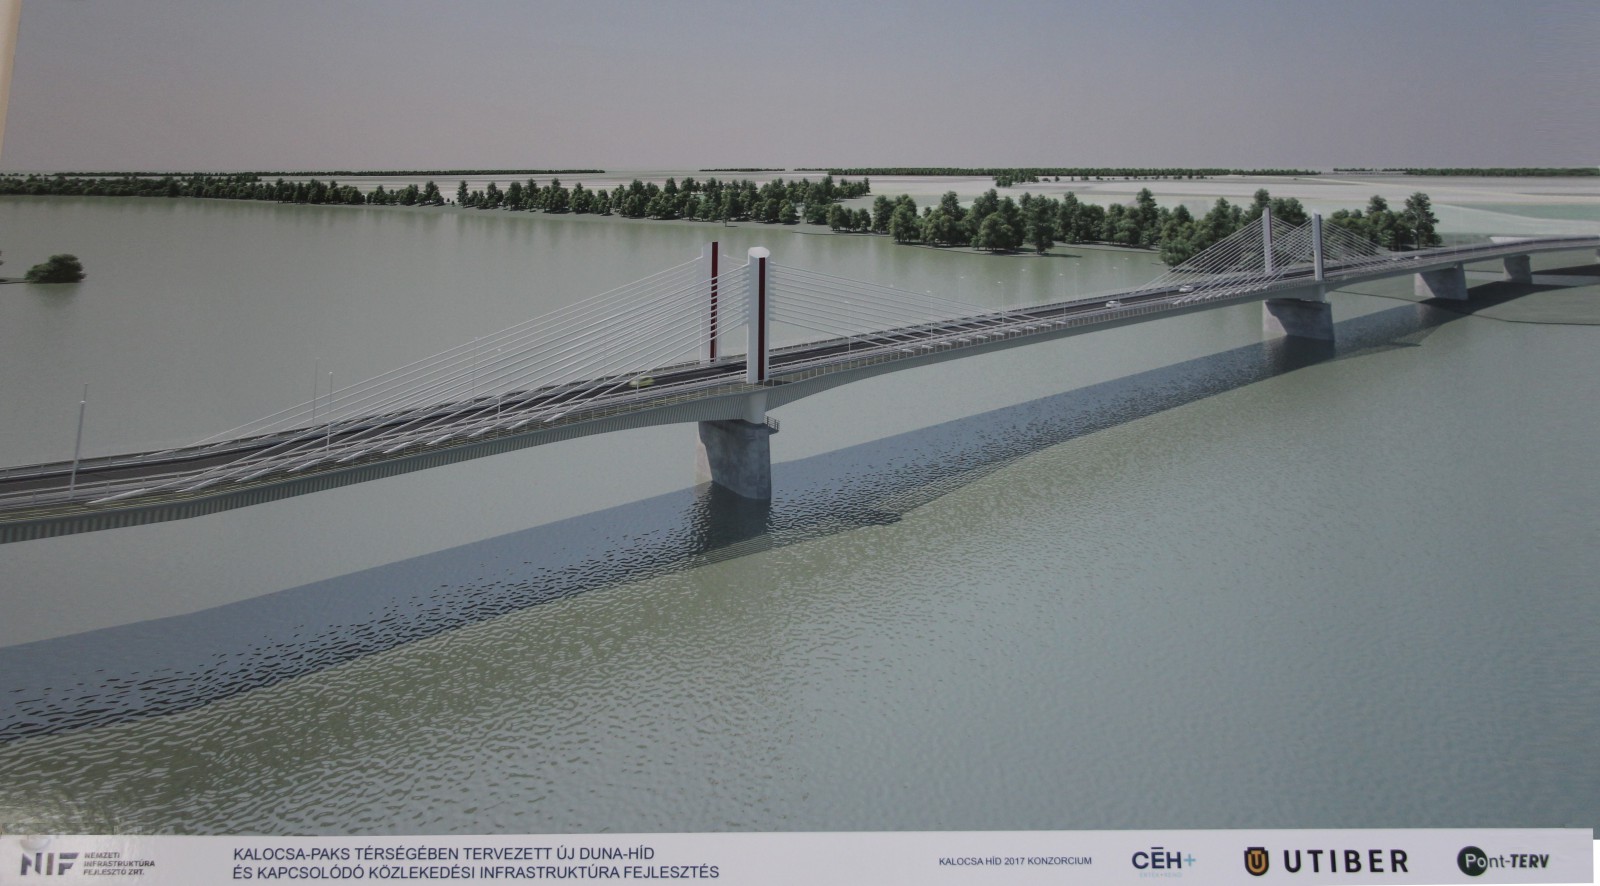 Kalocsai és környékbeli vállalkozások is beszállhatnak a Kalocsa-Paks Duna-híd építésébe – Betonüzemek, acélszerkezet gyártók a legesélyesebbek